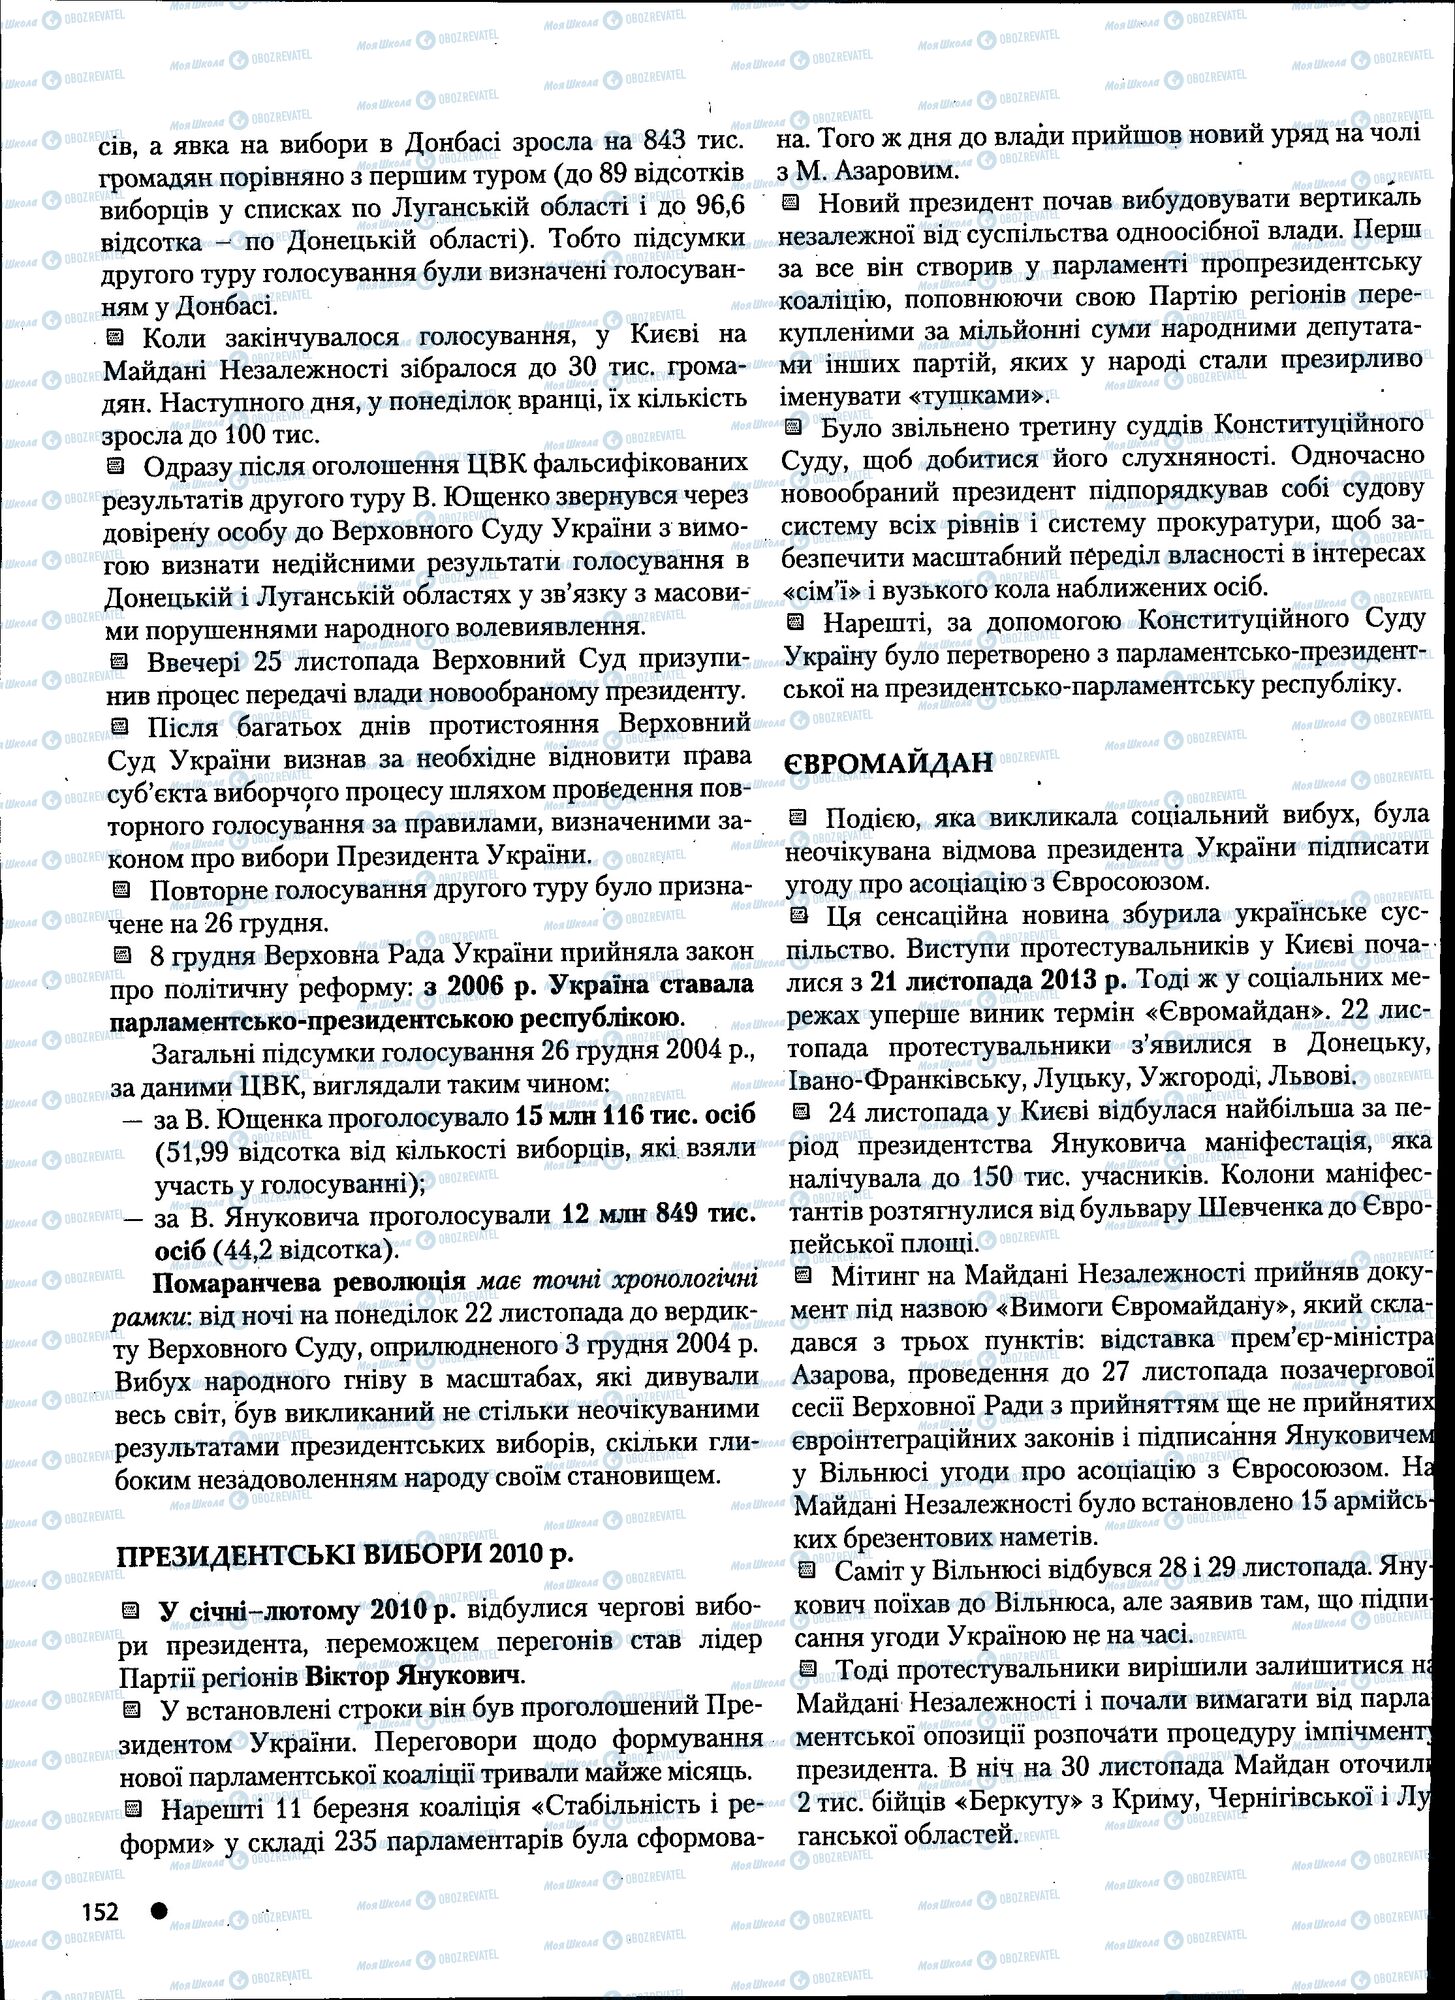 ДПА История Украины 11 класс страница 152